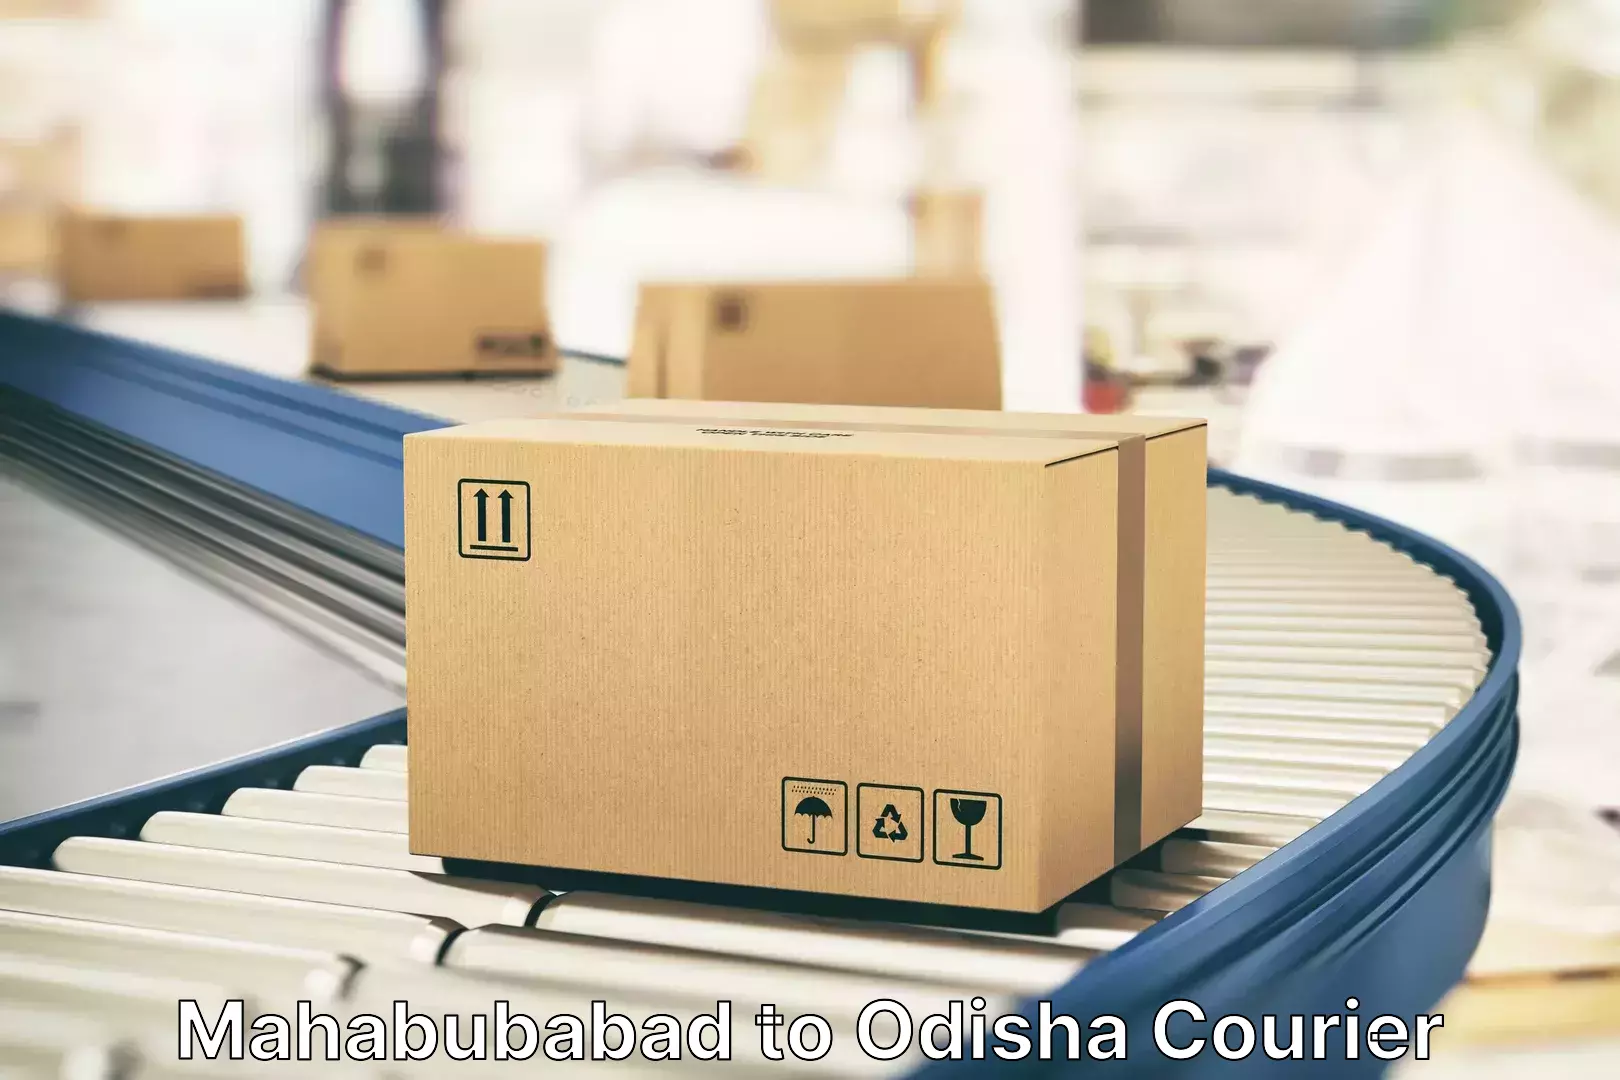 Luggage delivery providers Mahabubabad to Odisha